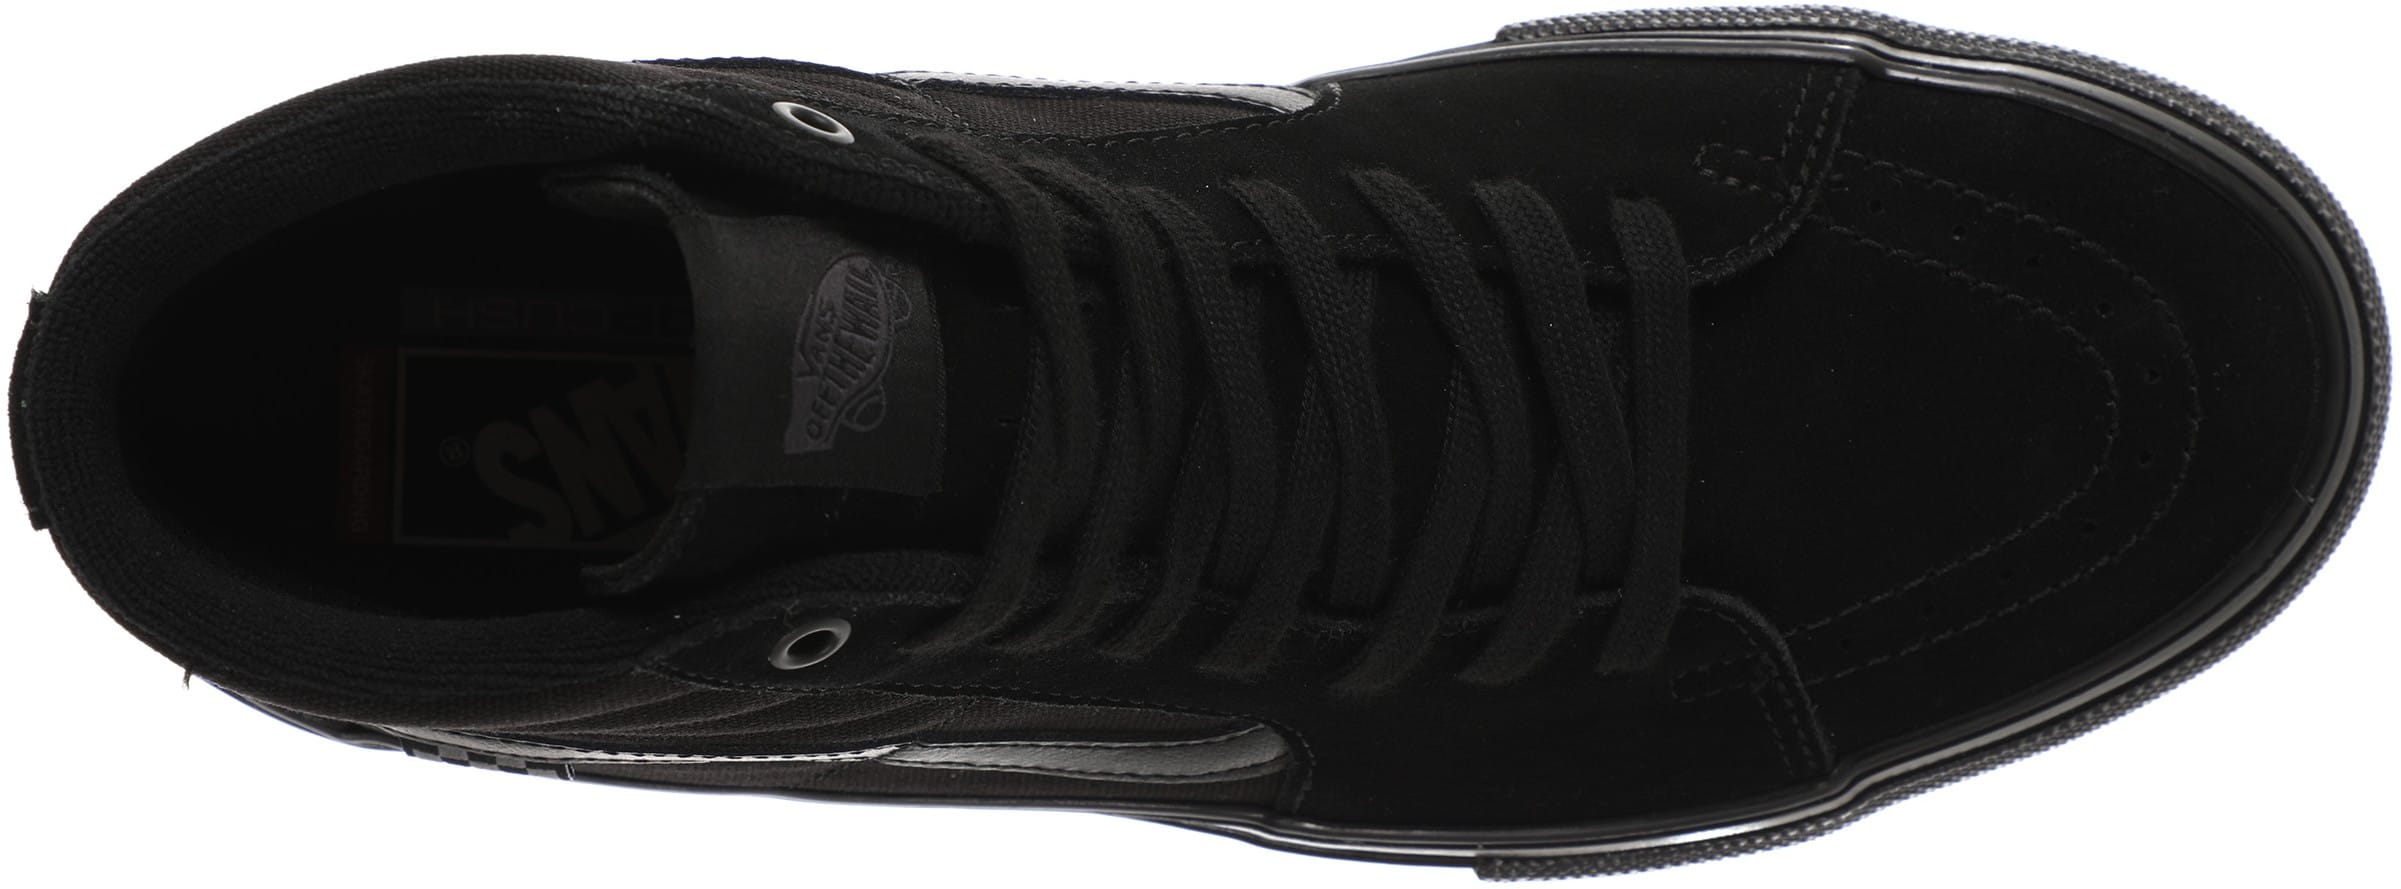 Vans Skate Sk8-Hi Shoes - black/black | Tactics